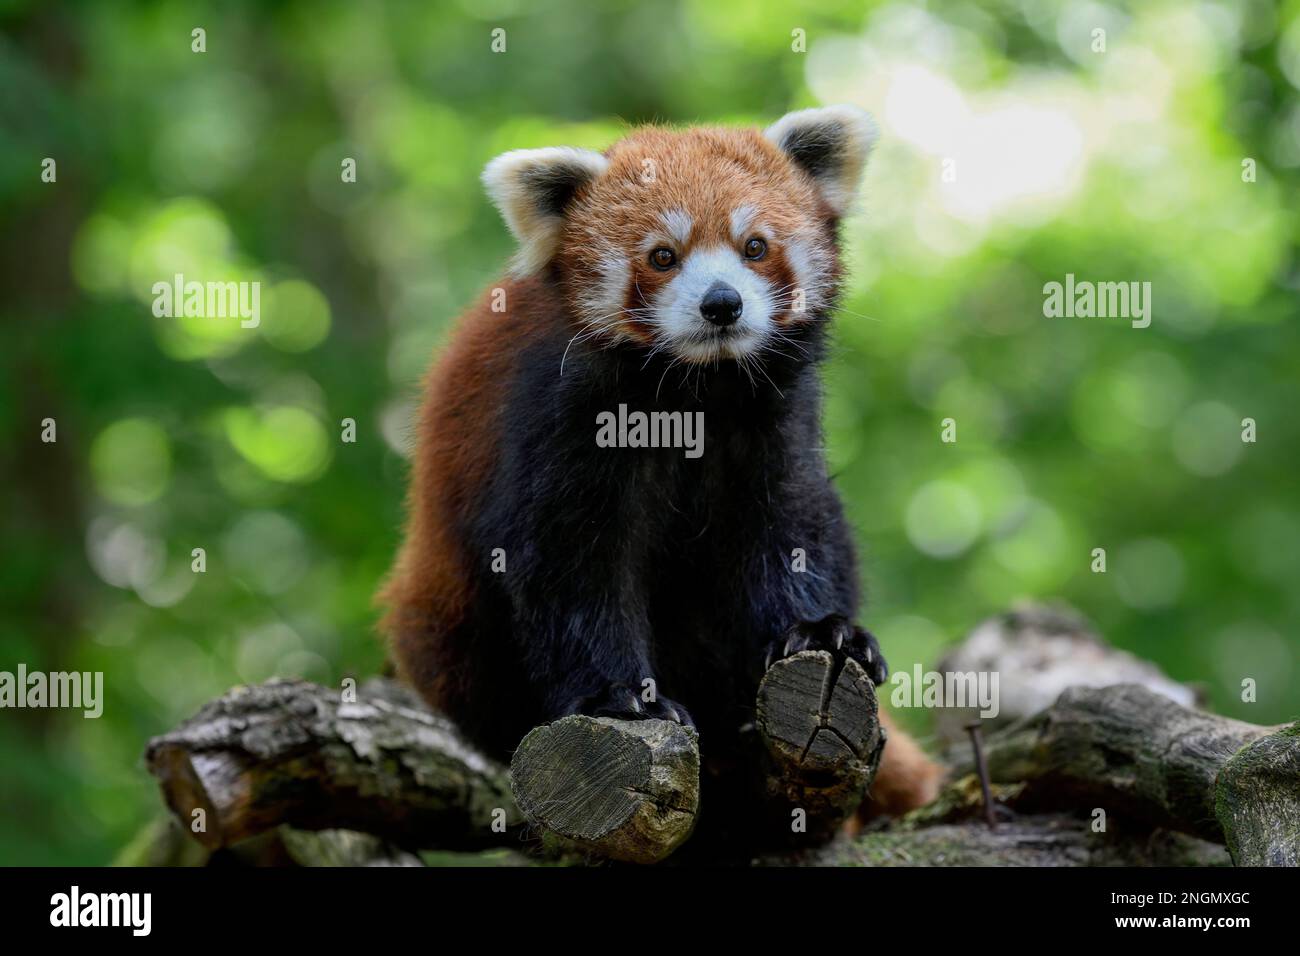 Red panda (Ailurus fulgens), Parc Animalier de Sainte-Croix, nature park Park, near Rhodes, Departement Moselle, Lorraine, France Stock Photo